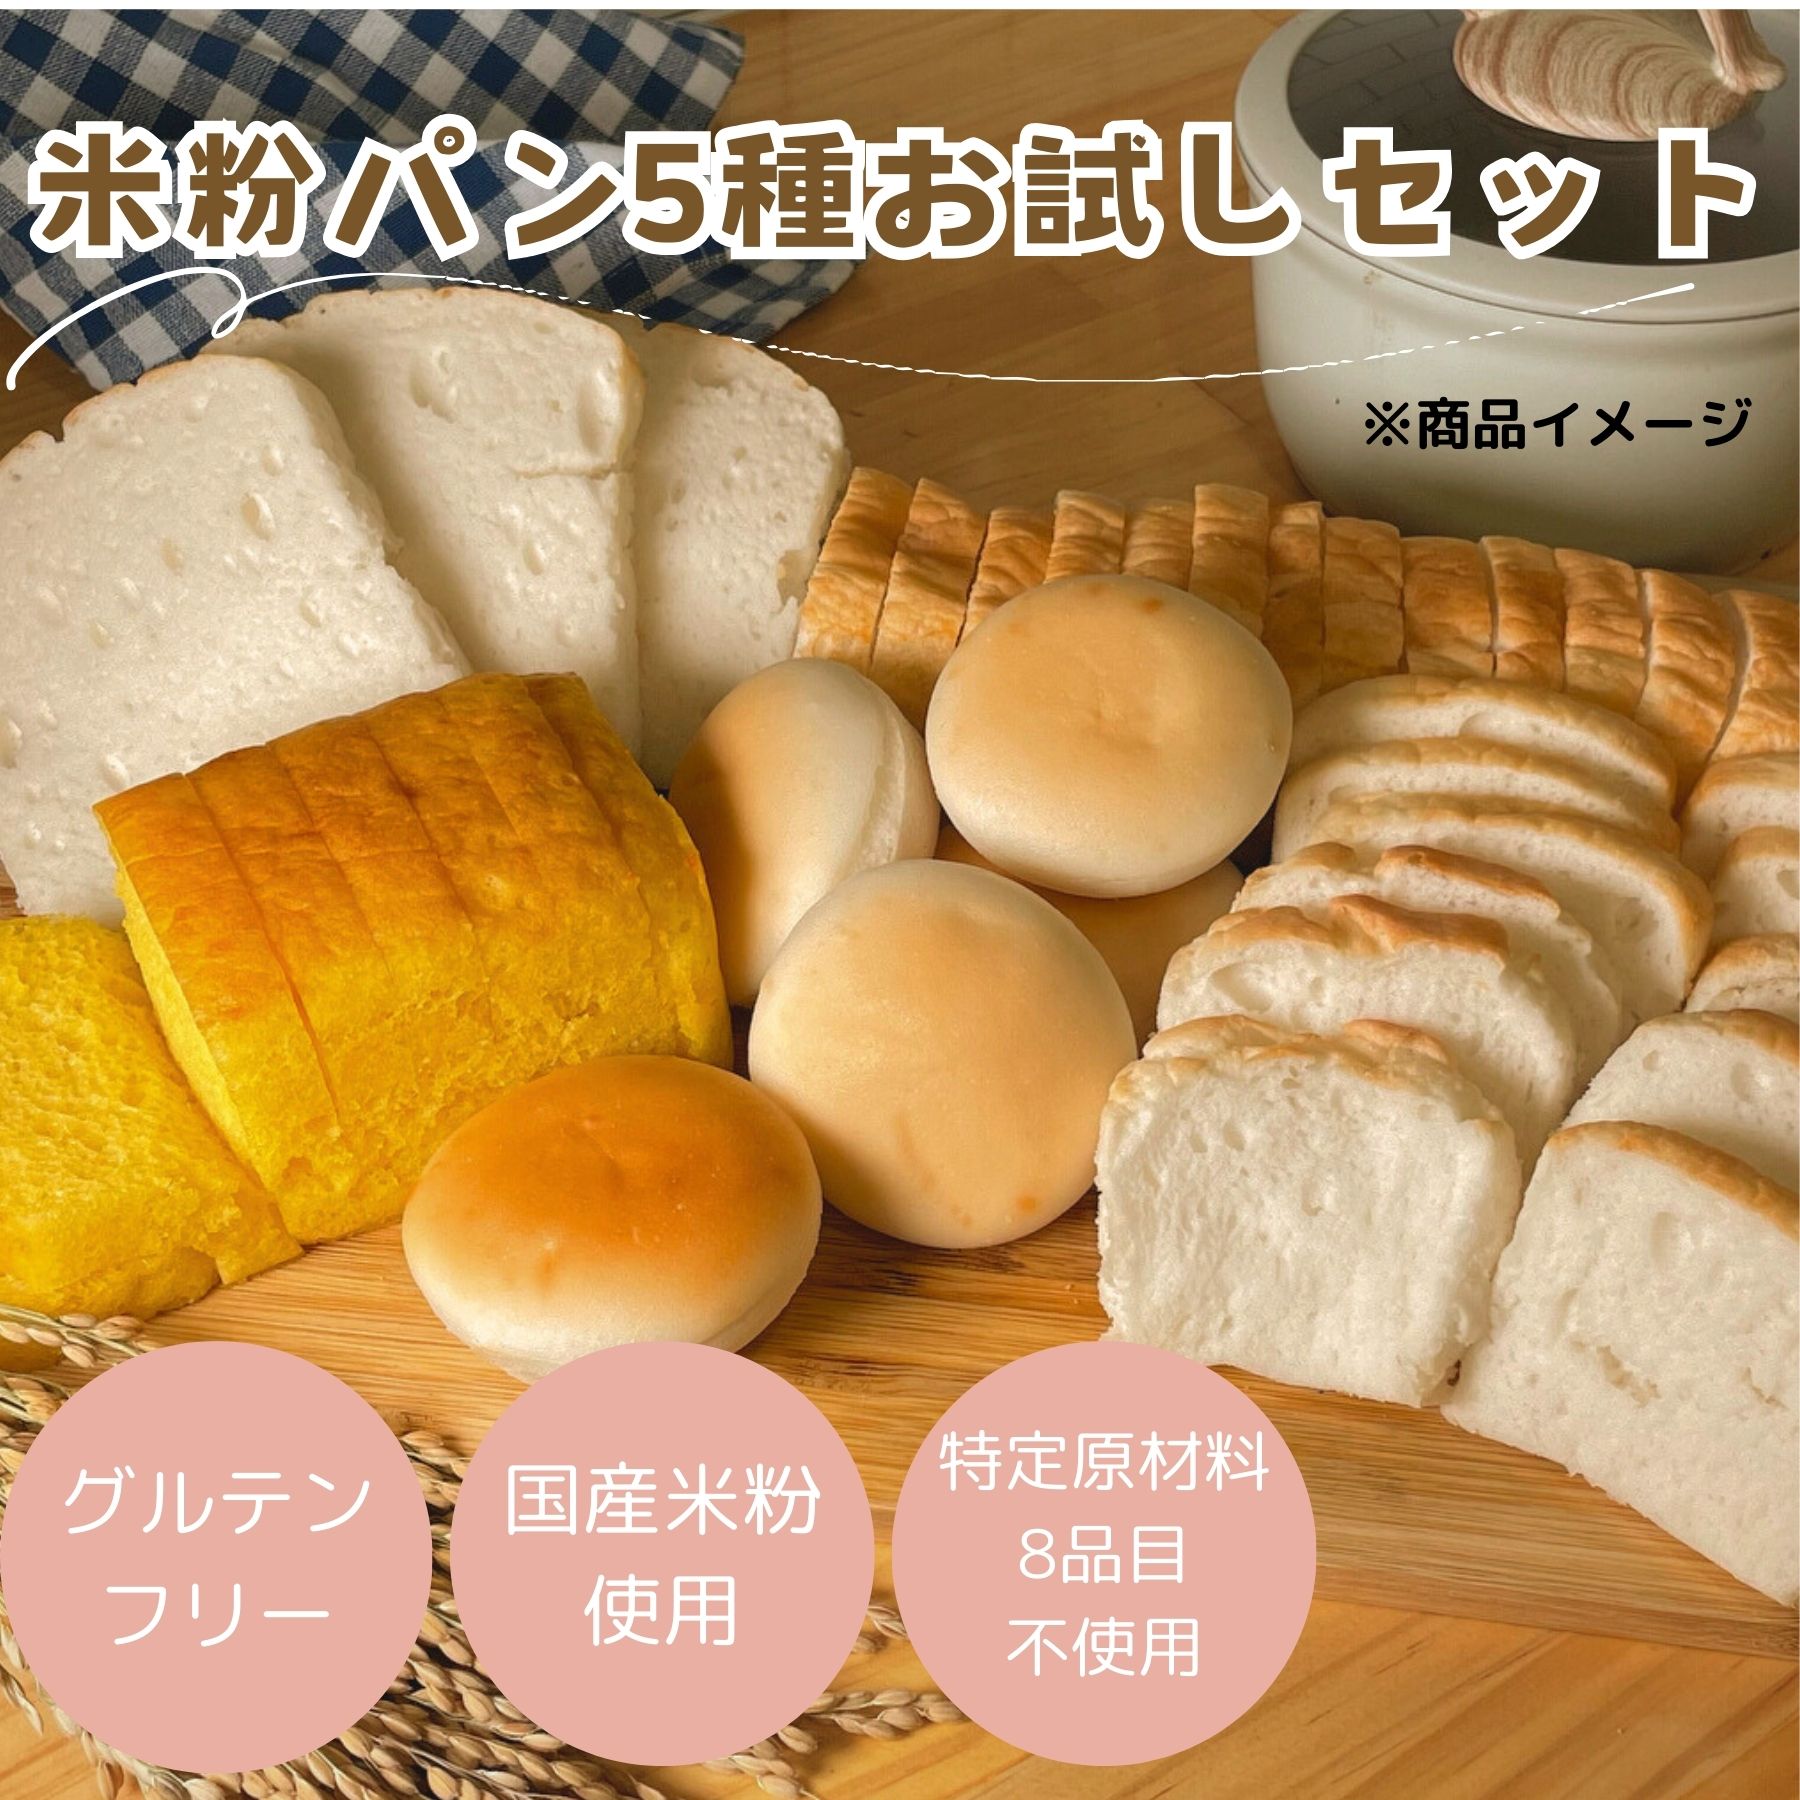 (公式) みんなの食卓 米粉パン アソートセット 5種 お試し 日本ハム グルテンフリー アレルギー ...